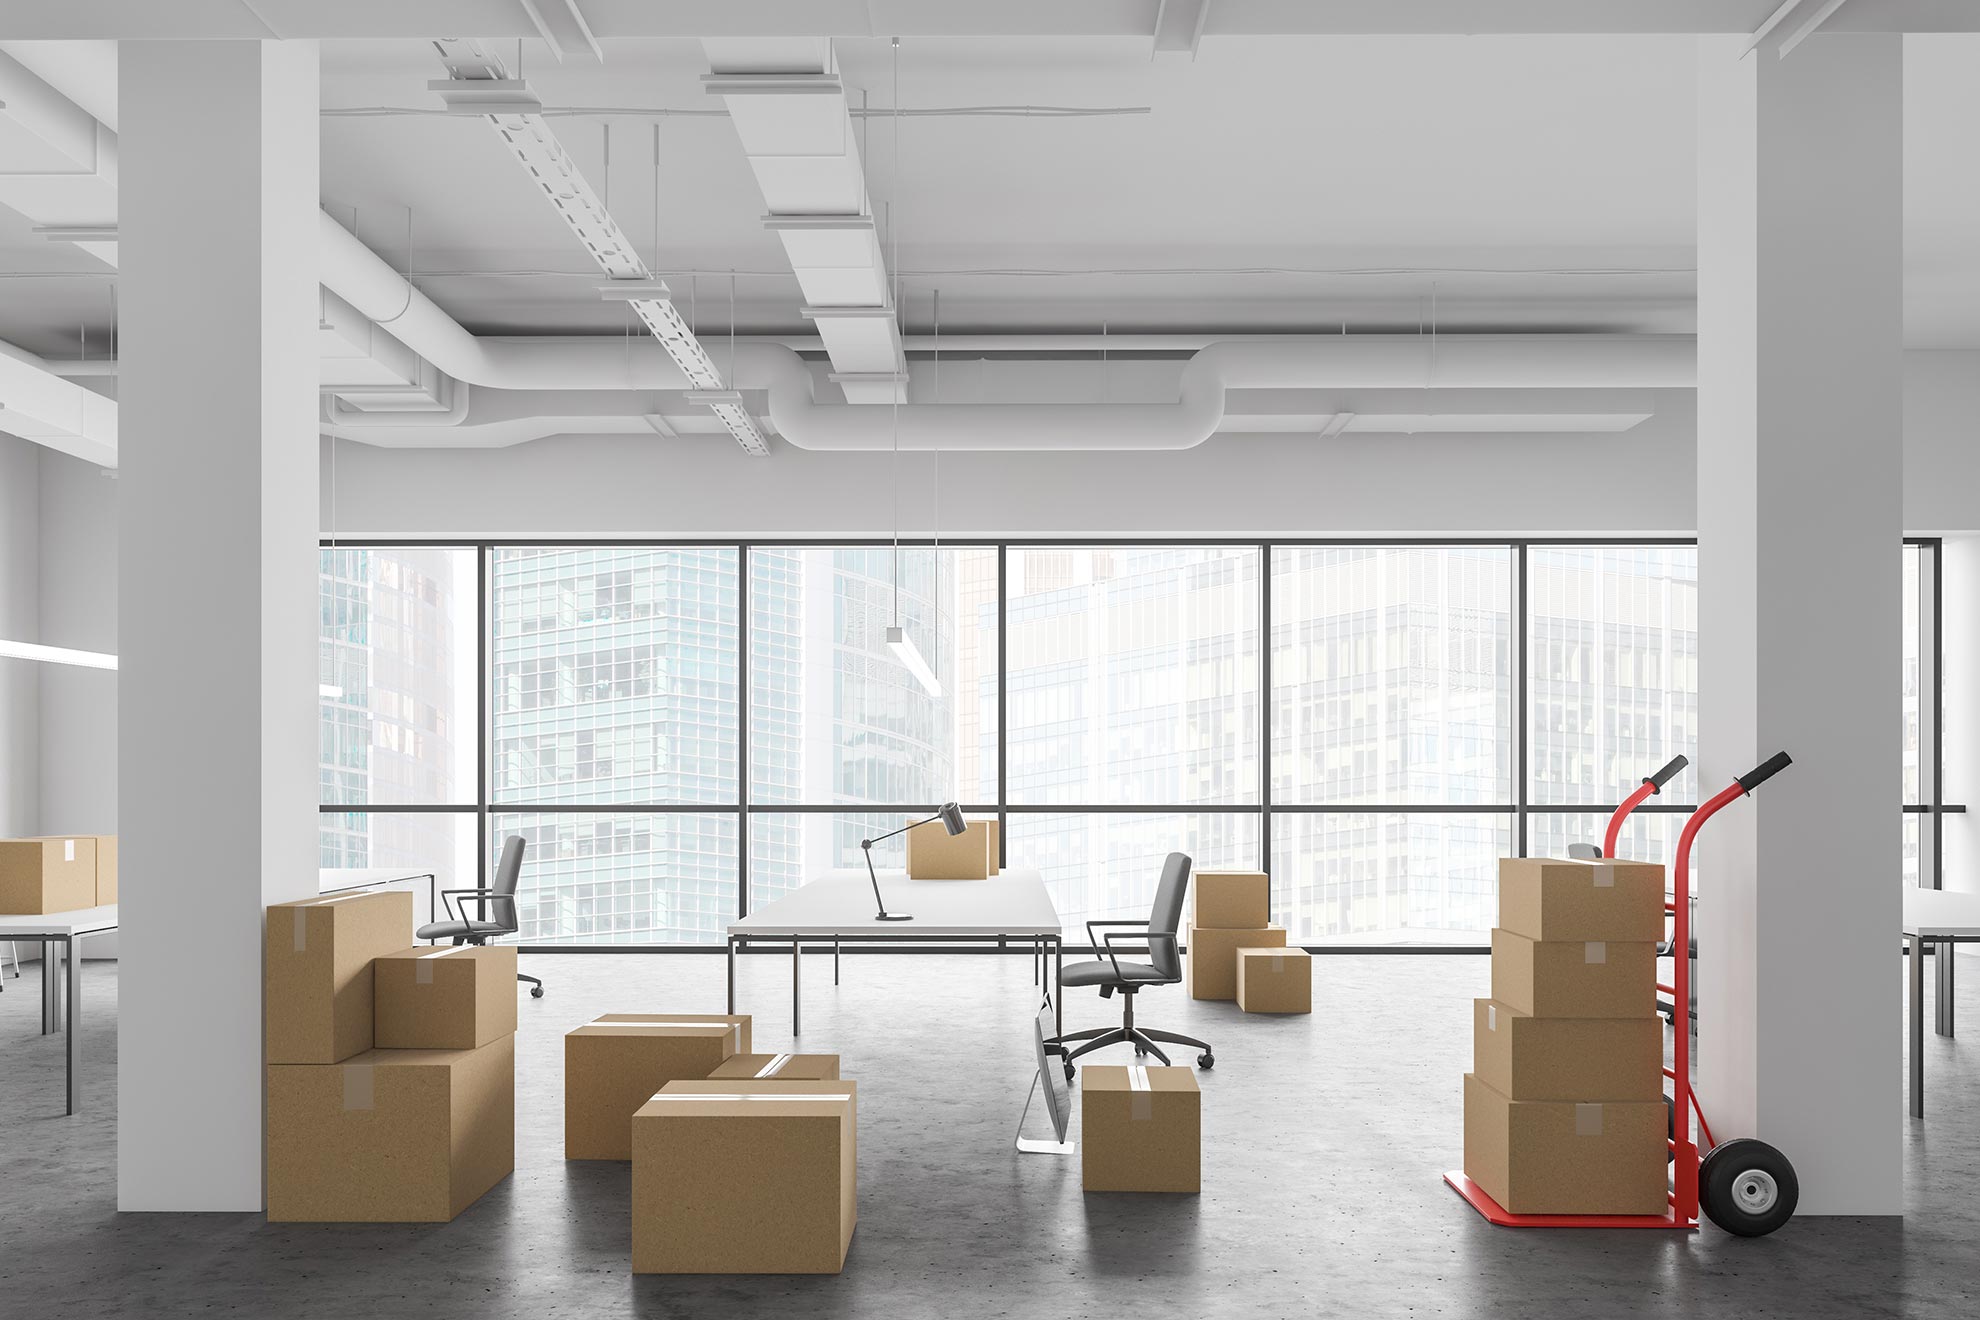 Ein nahezu leerer großer Büroraum im höher gelegenem Stockwerk, in denen Bürostühle, Tische und einige Umzugskartons stehen.